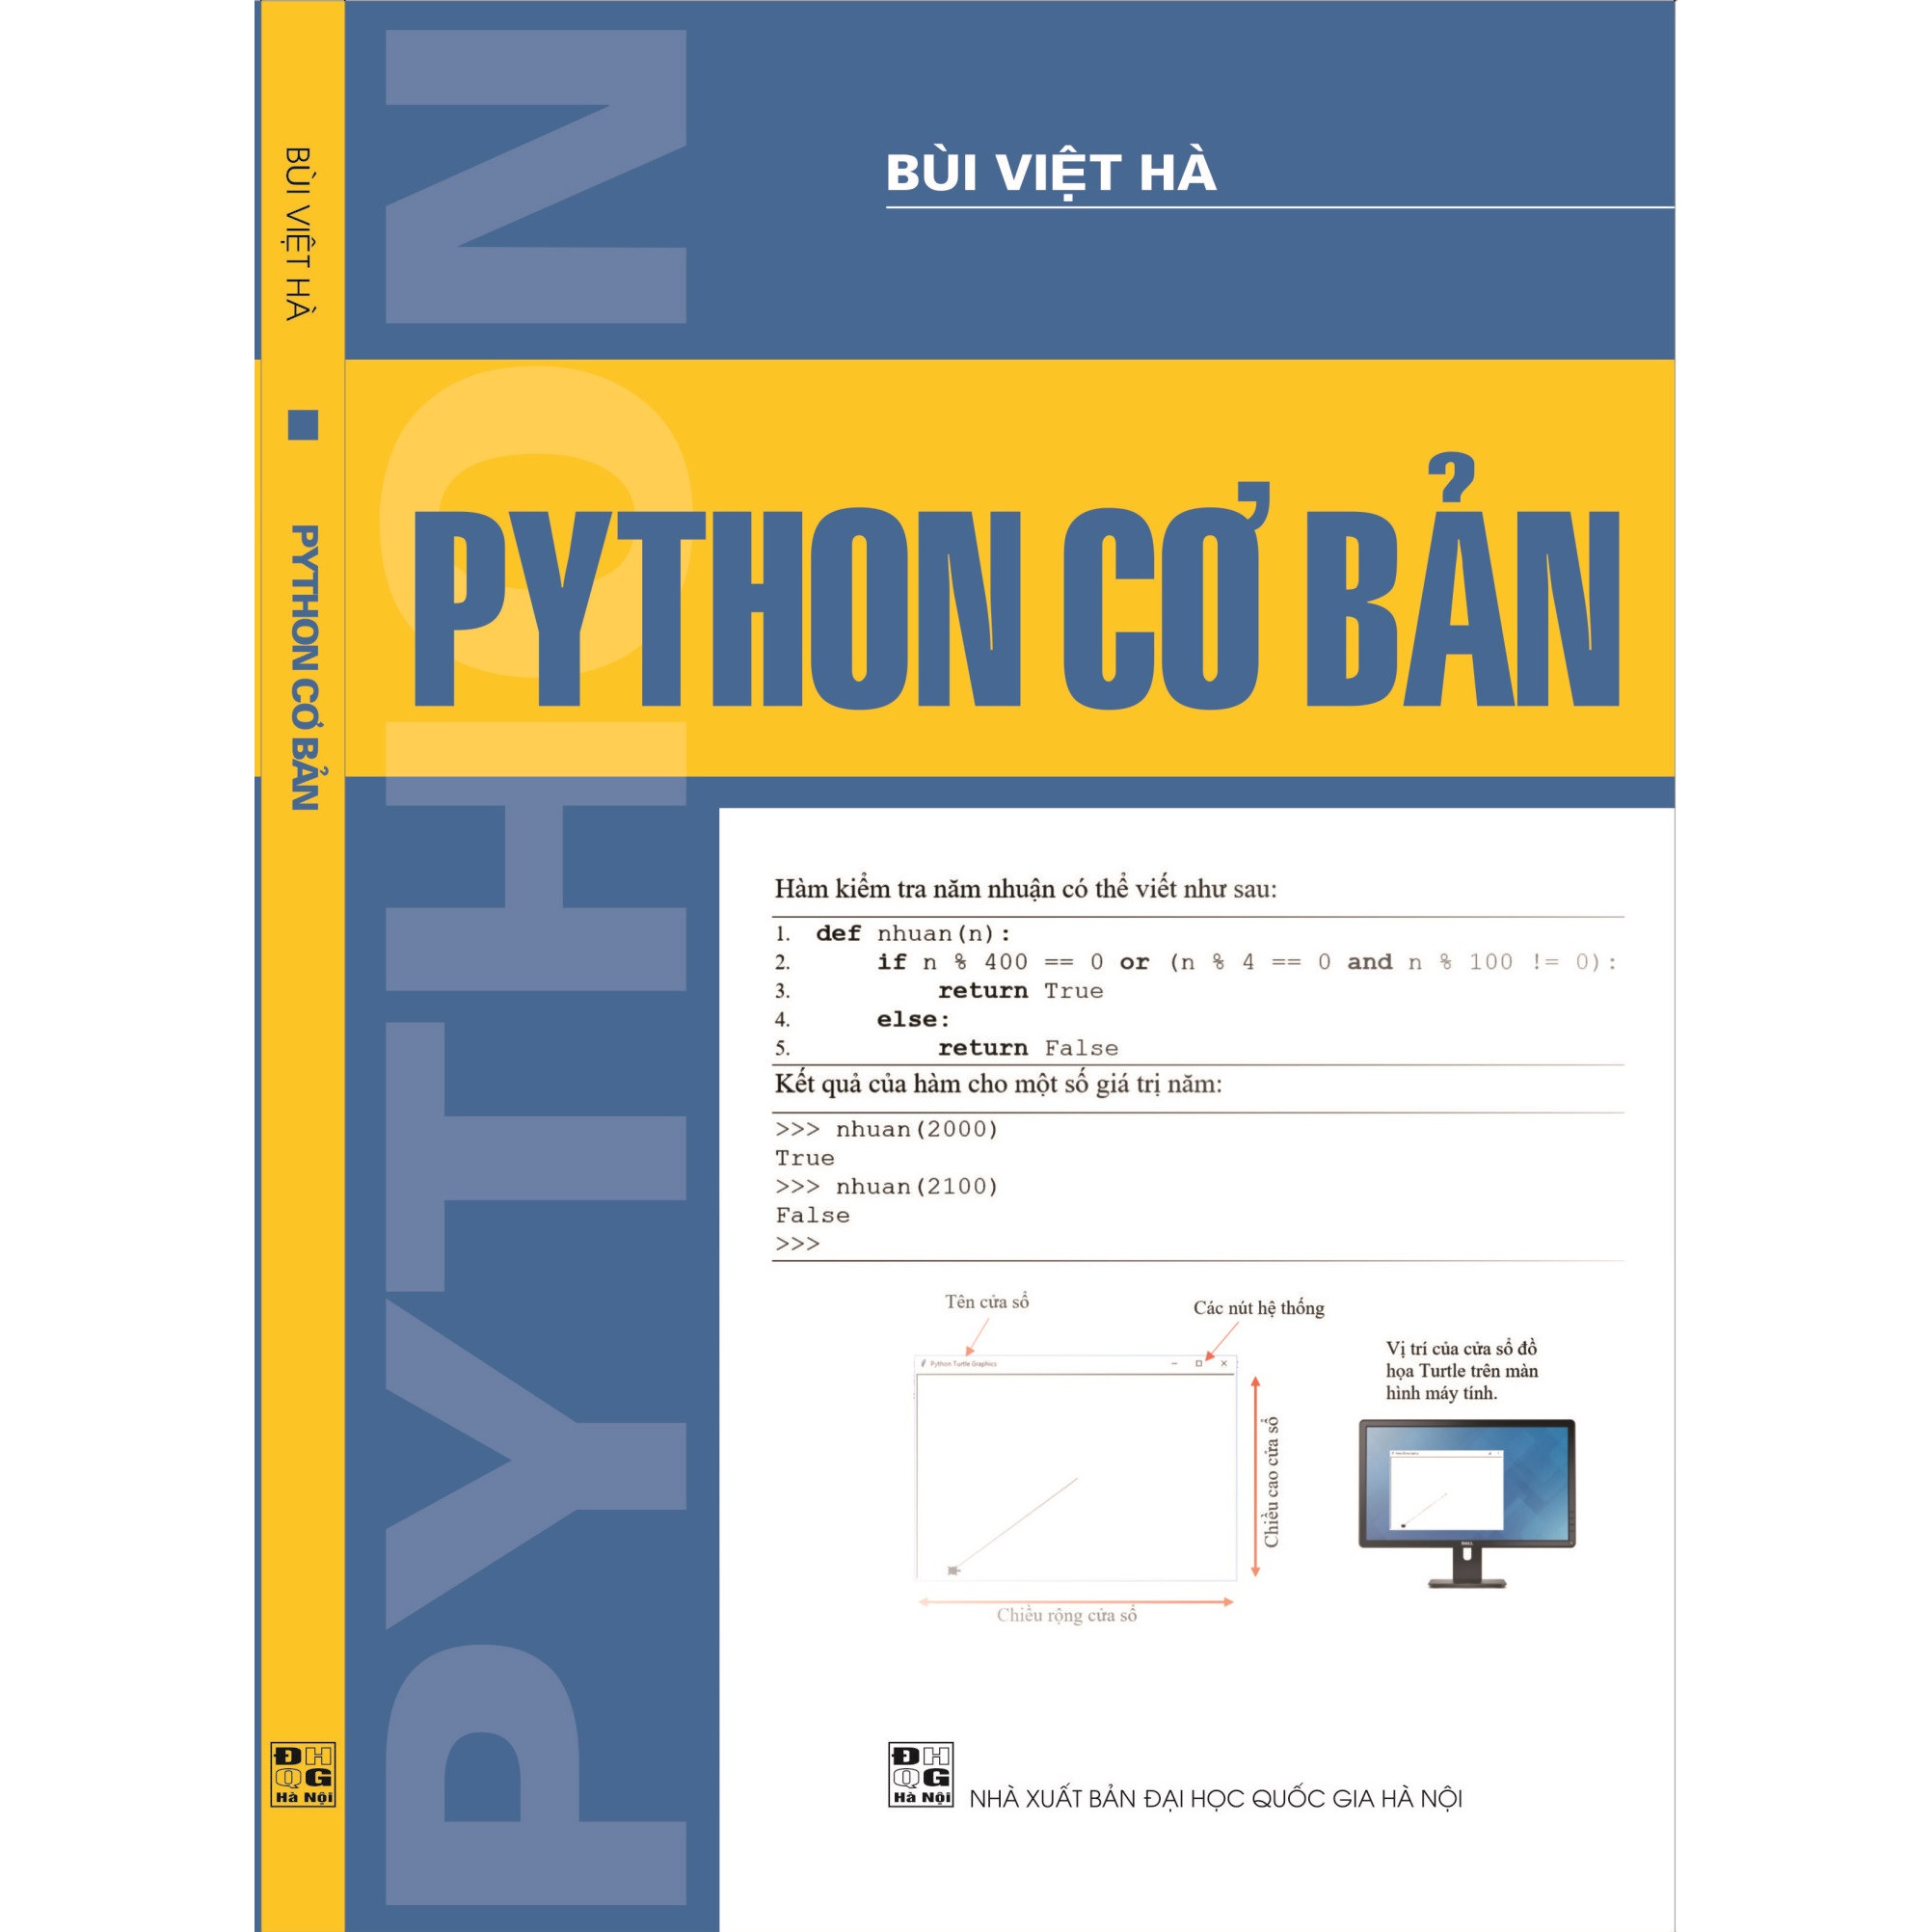 Mua Python cơ bản tại Sách lập trình